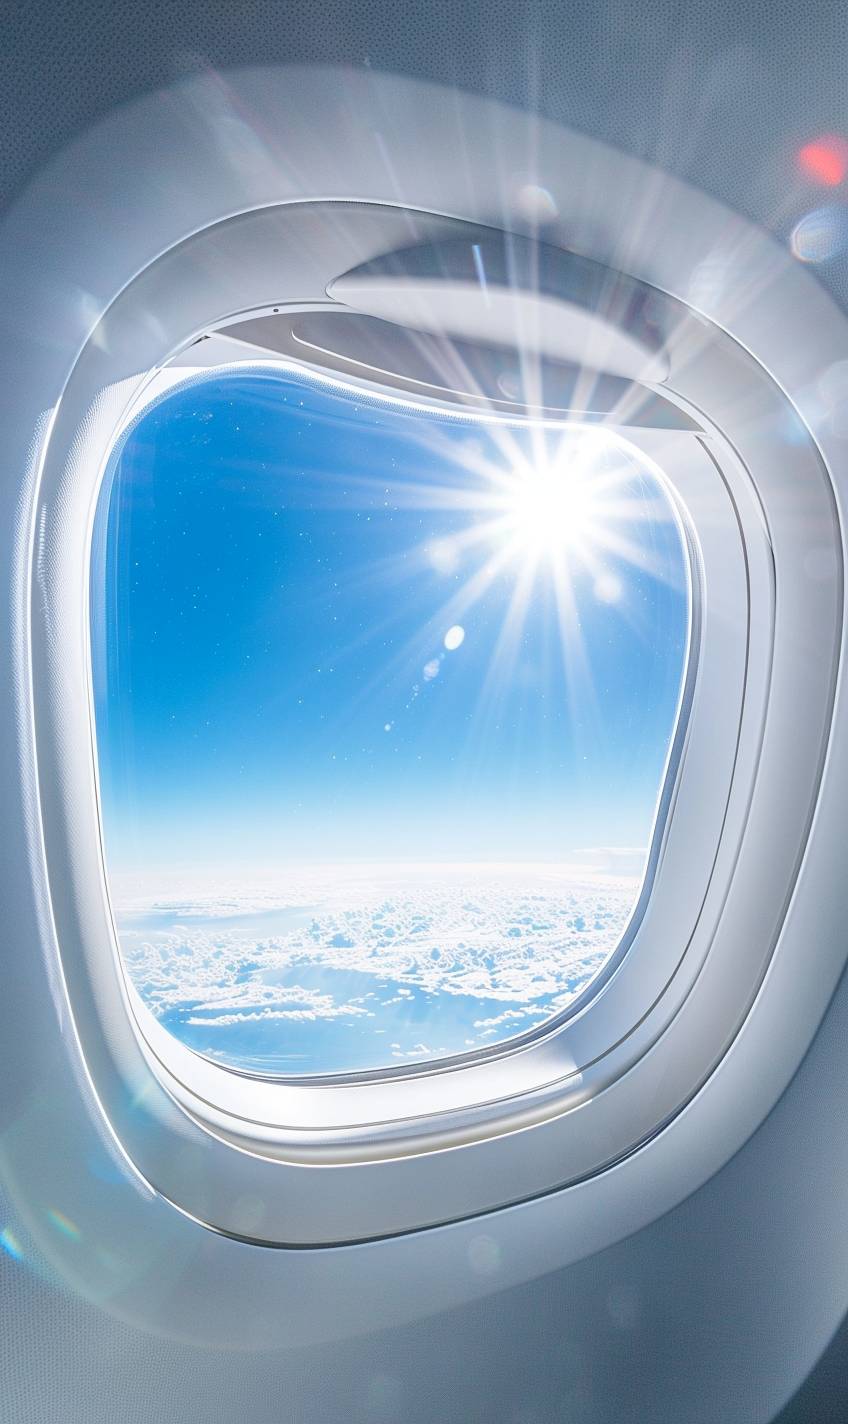 太阳は明るく輝いています。鮮やかな色彩、クリーンな青空に映る飛行機の窓のクローズアップ。内部には白いテーブルがあります。シーンは飛行機の内部から何かを見ることができることを伝えるべきです。ファッション雑誌広告のスタイルで。